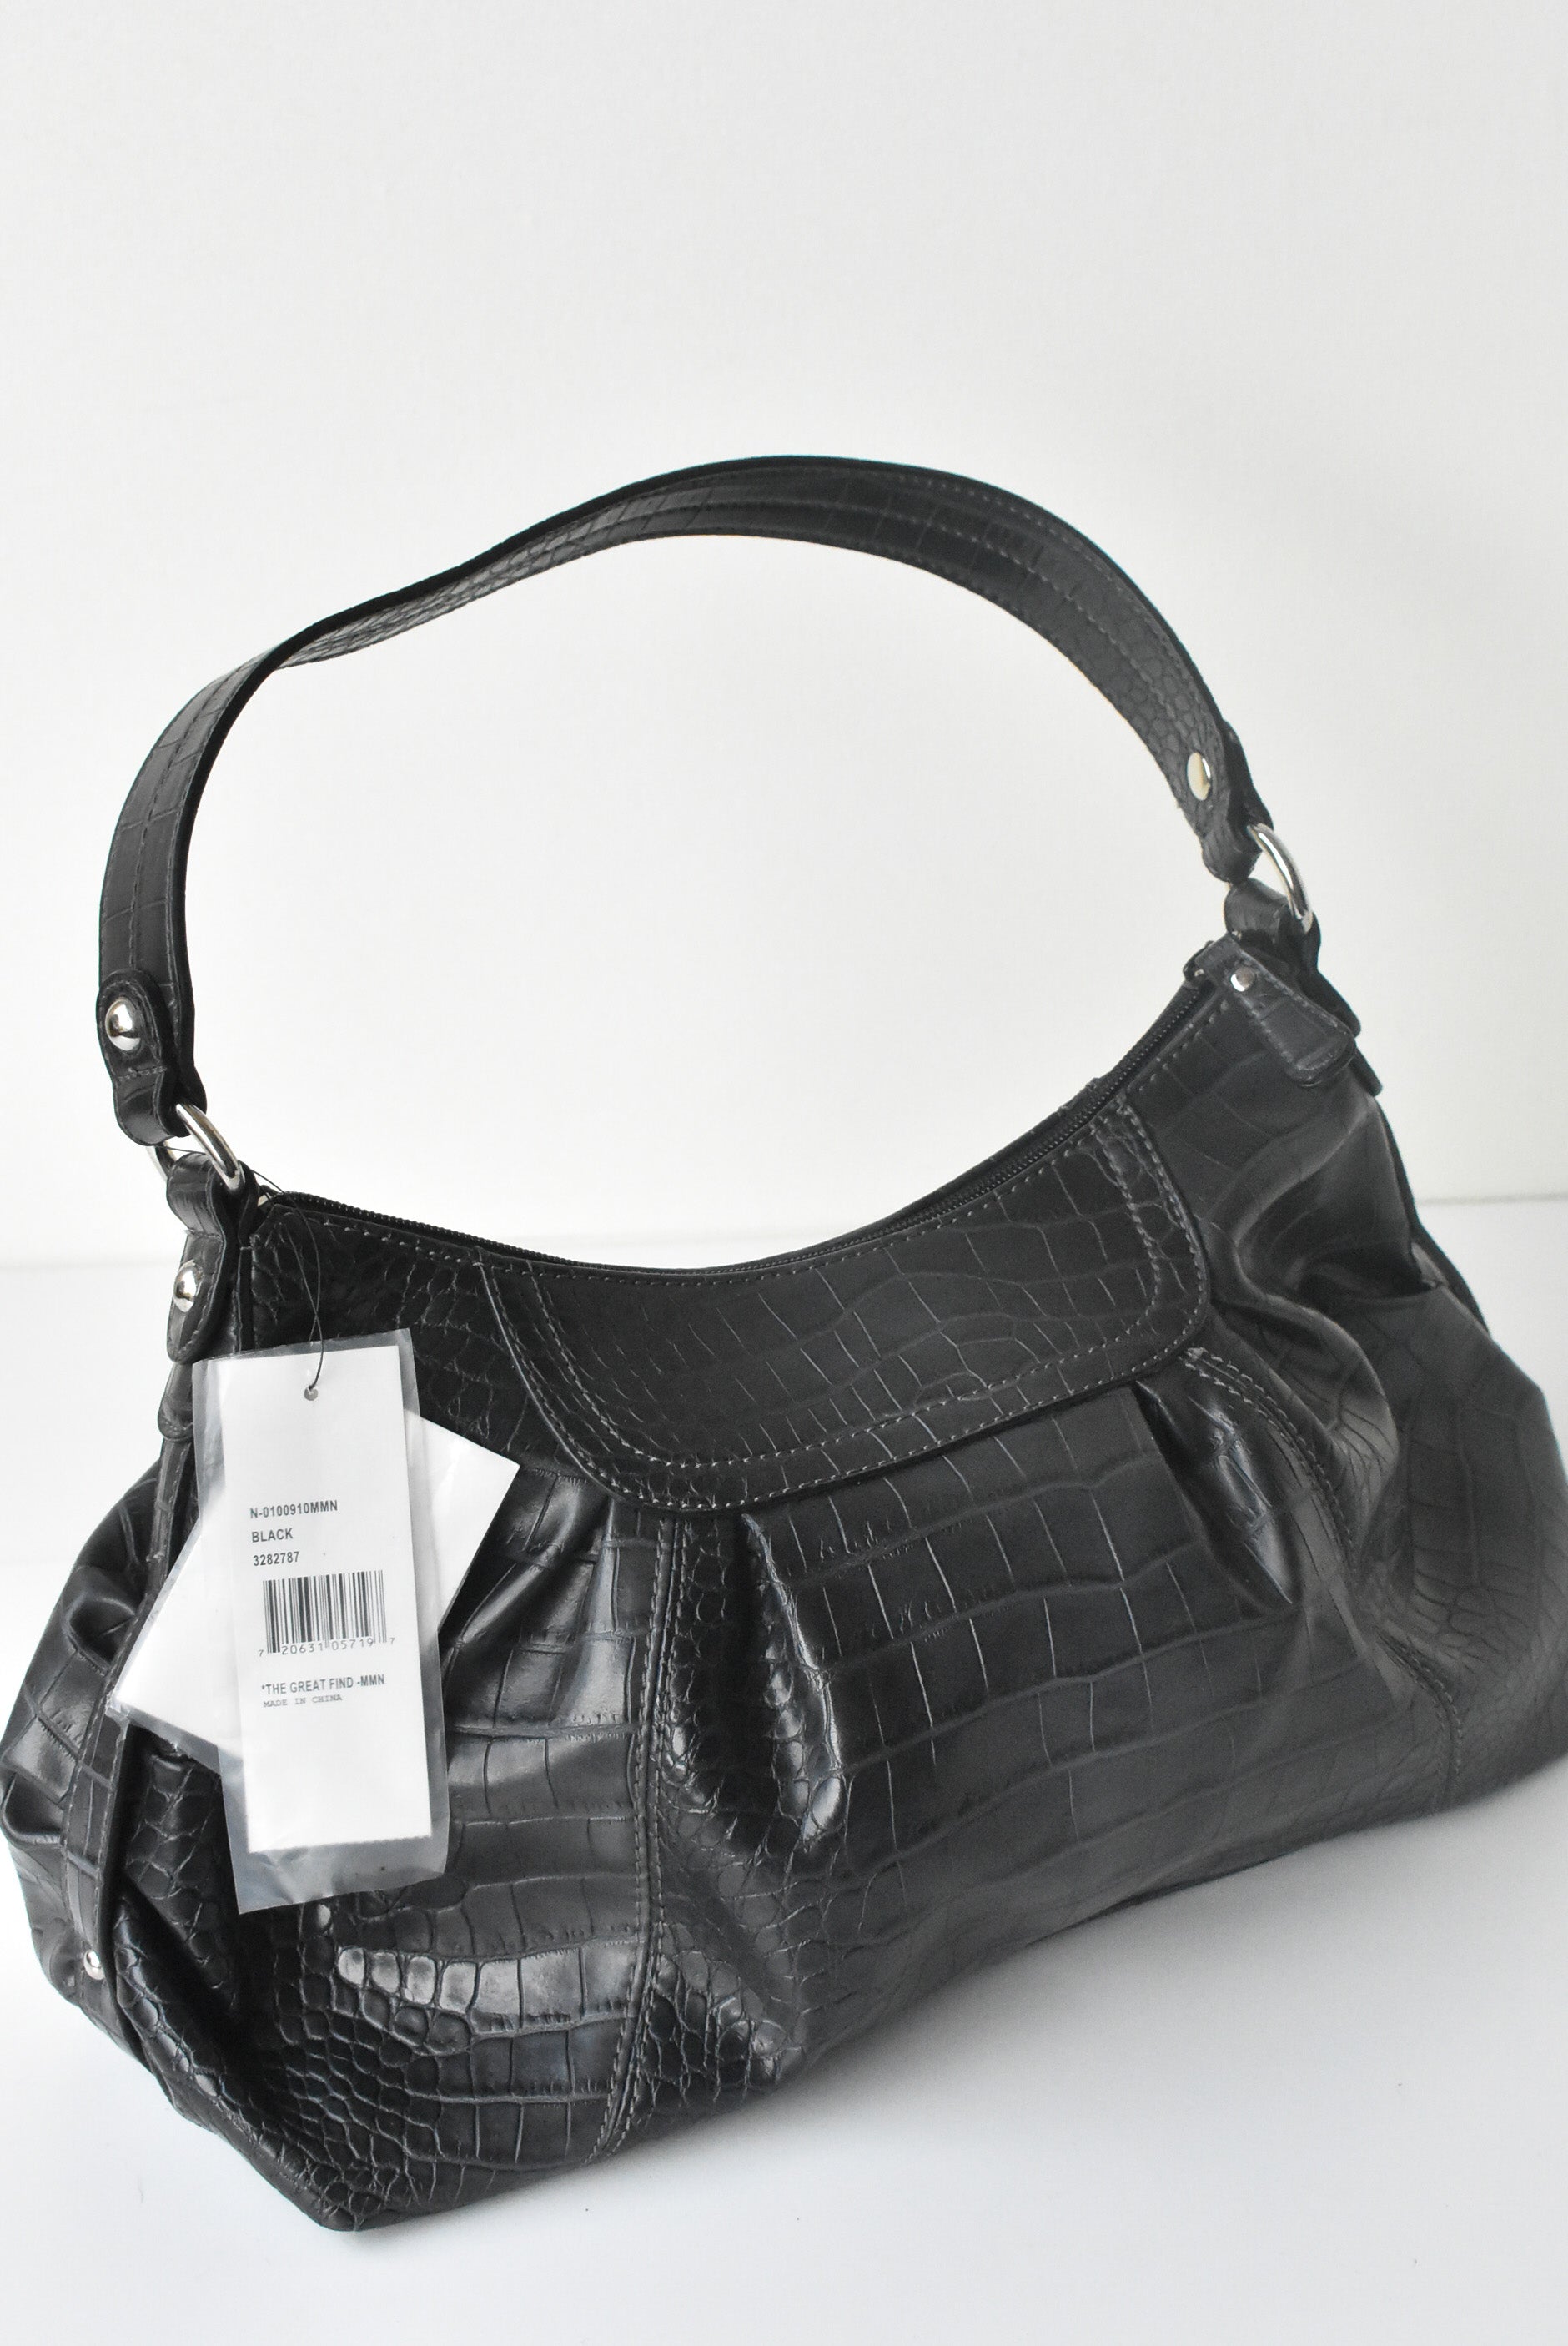 NINE WEST navy Blue Leather Shoulder Bag Purse | eBay